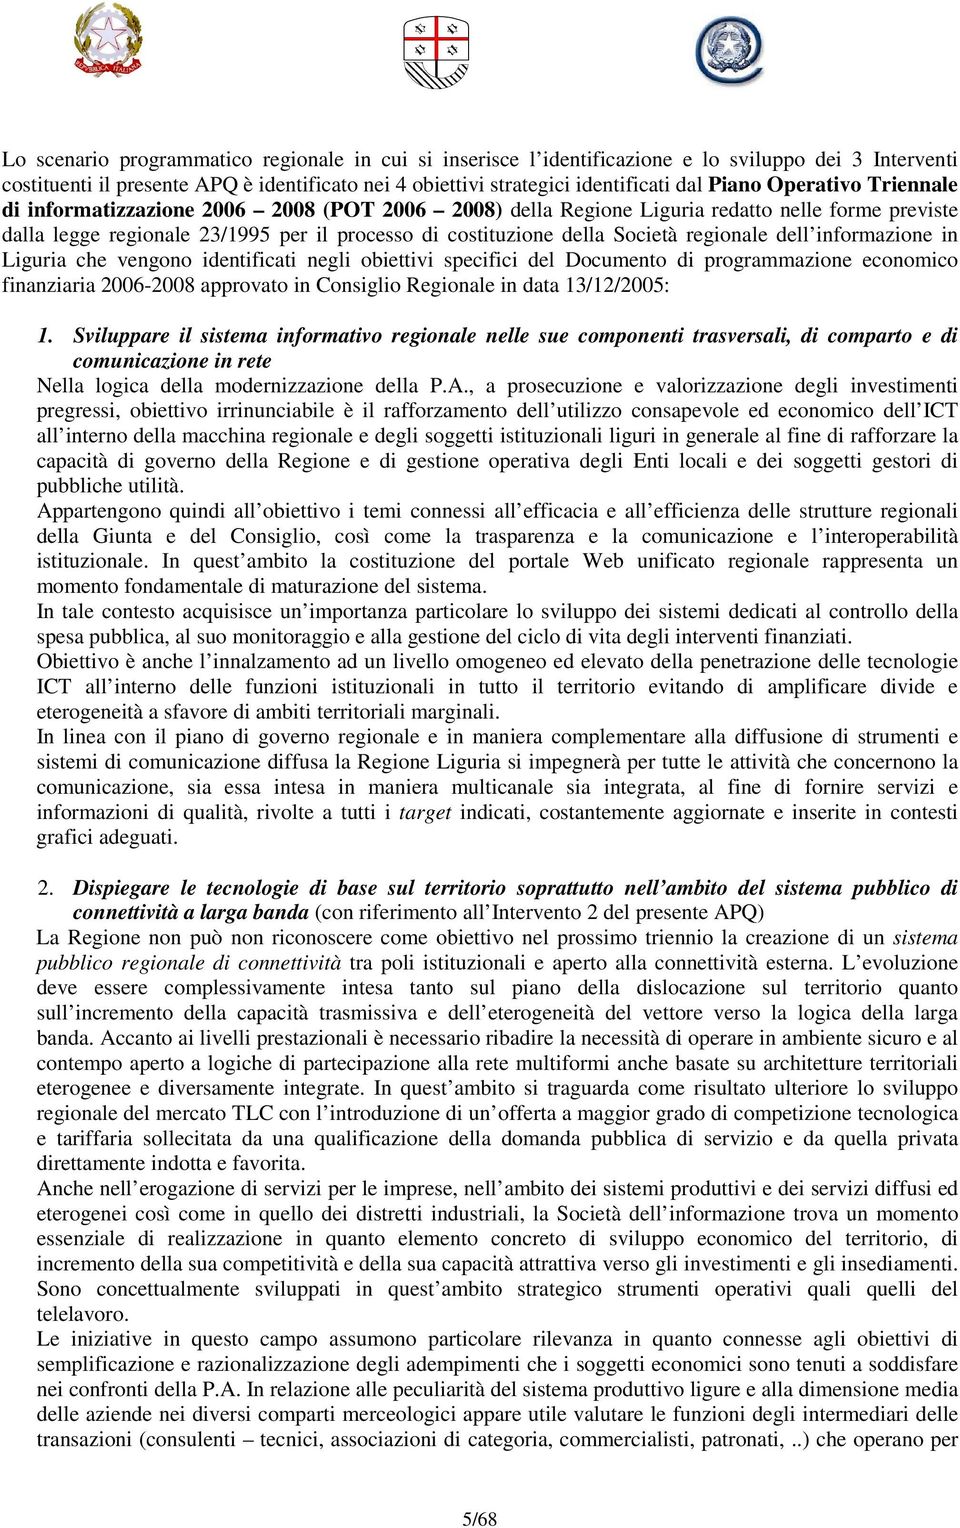 regionale dell informazione in Liguria che vengono identificati negli obiettivi specifici del Documento di programmazione economico finanziaria 2006-2008 approvato in Consiglio Regionale in data